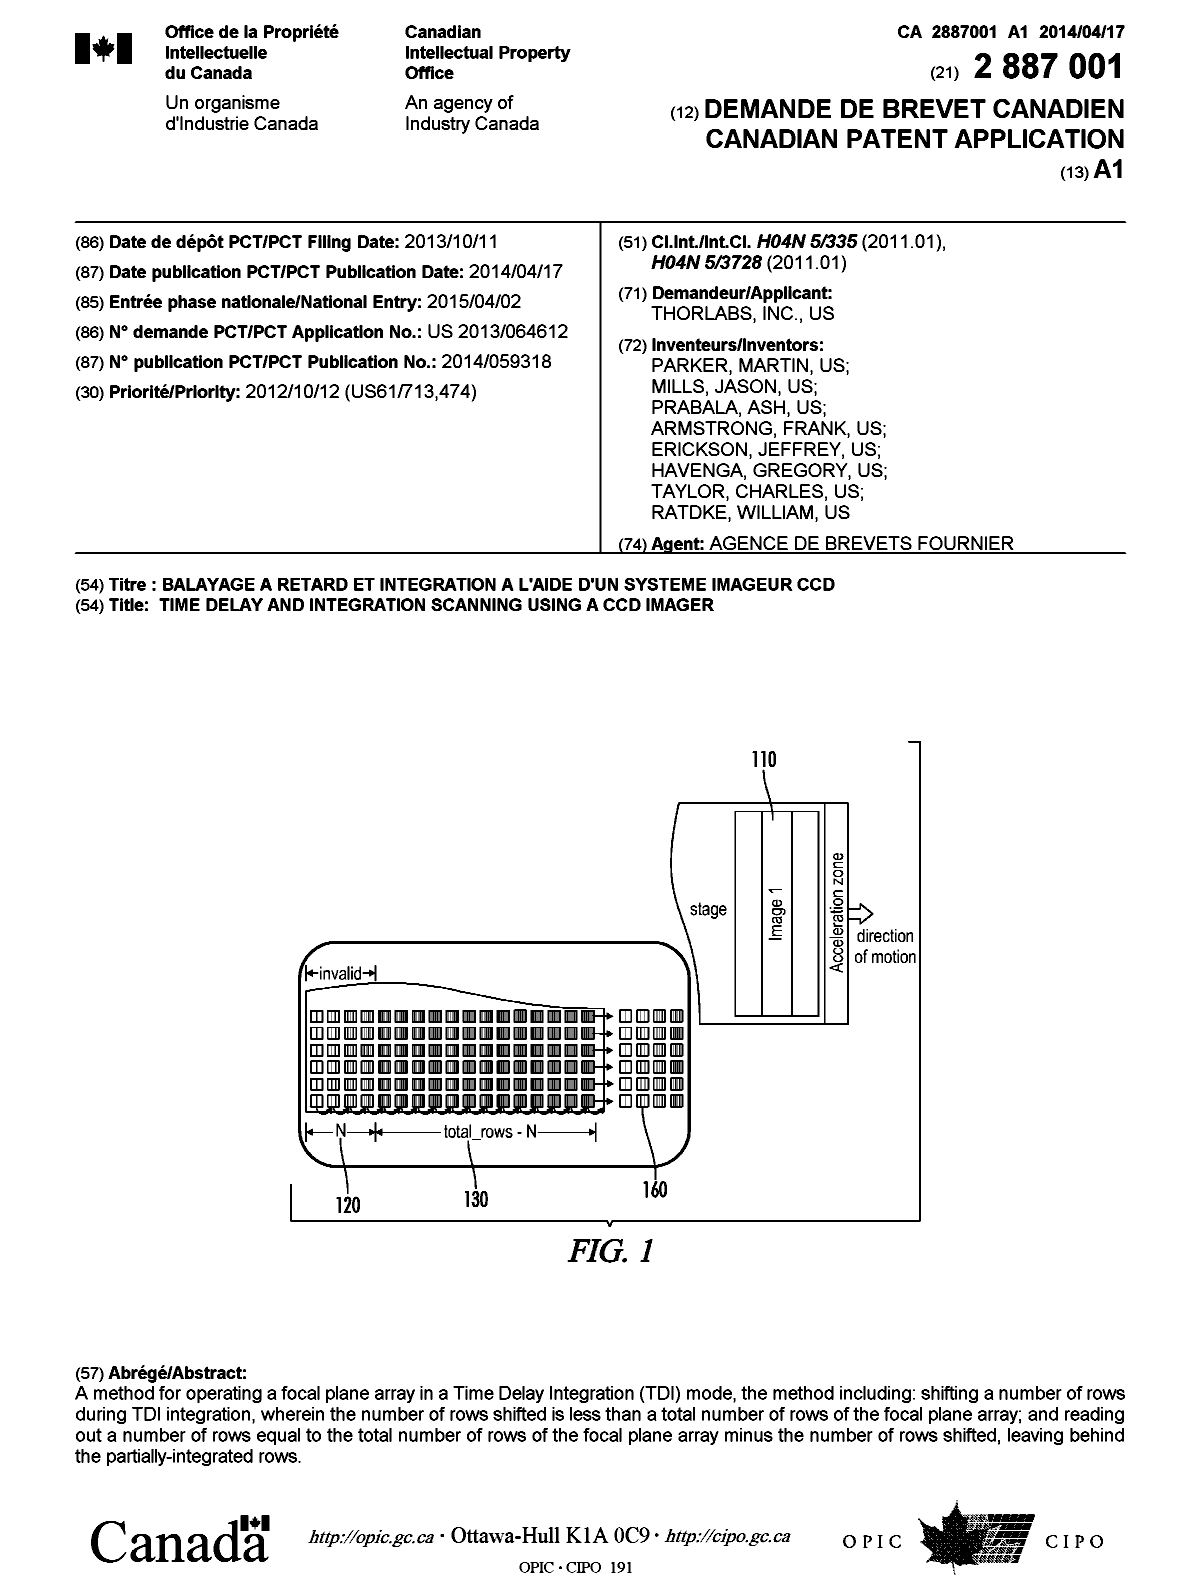 Document de brevet canadien 2887001. Page couverture 20141222. Image 1 de 1